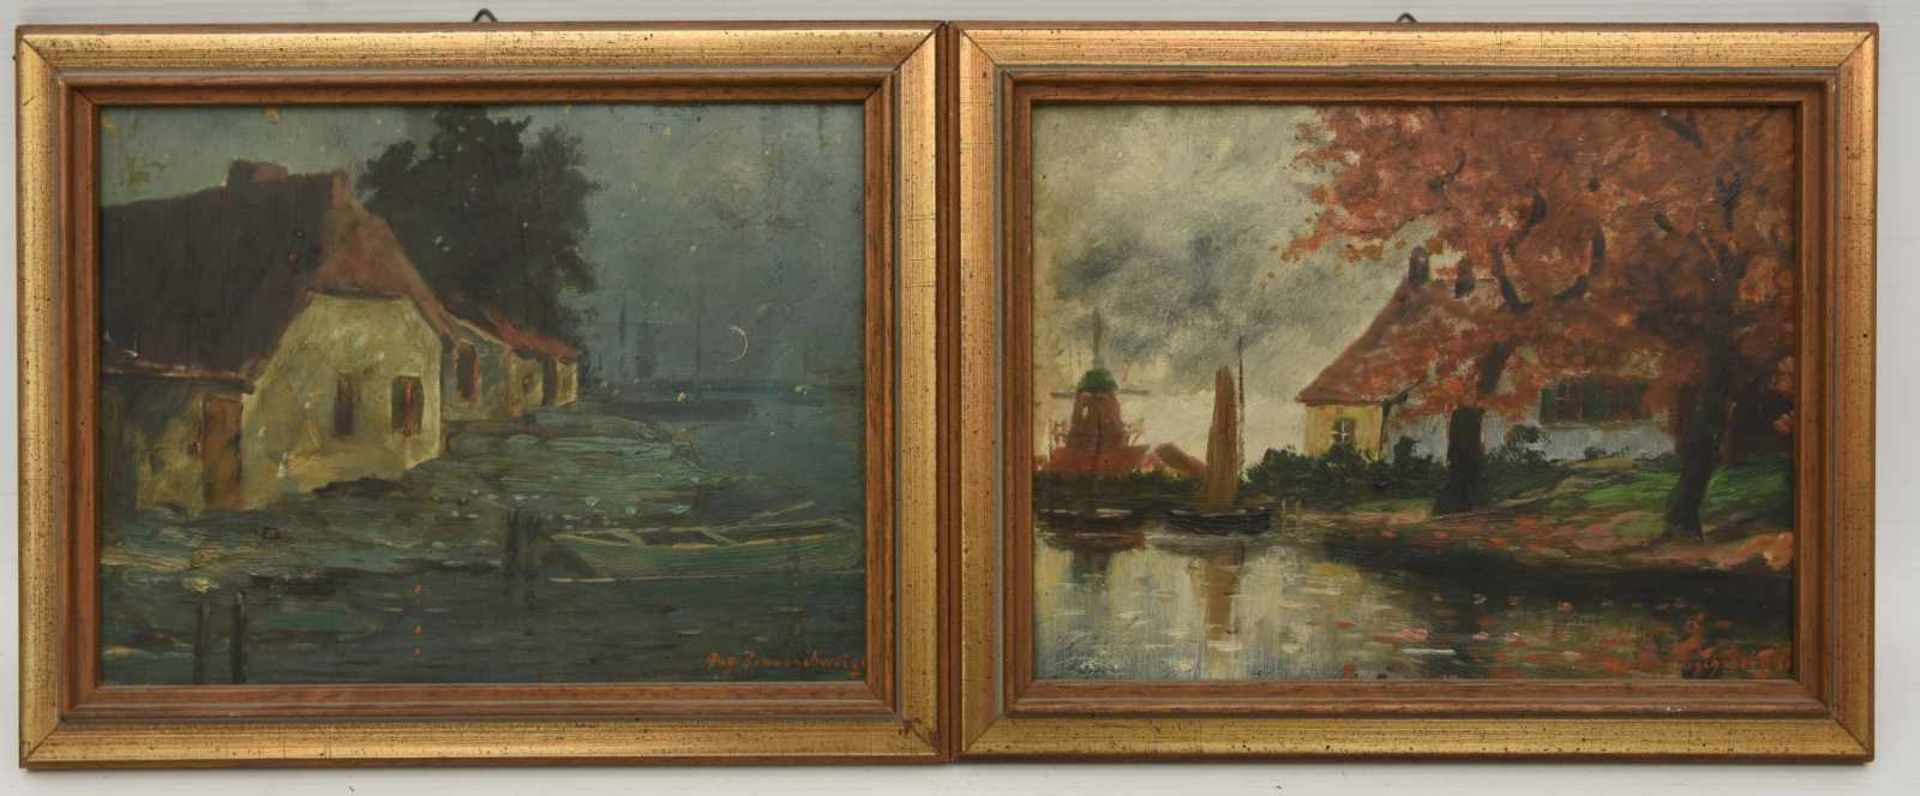 AUGUST BRAUNSCHWEIGER:", Zwei holländische Landschaftszenen", Öl auf Holz, gerahmt und signiert,